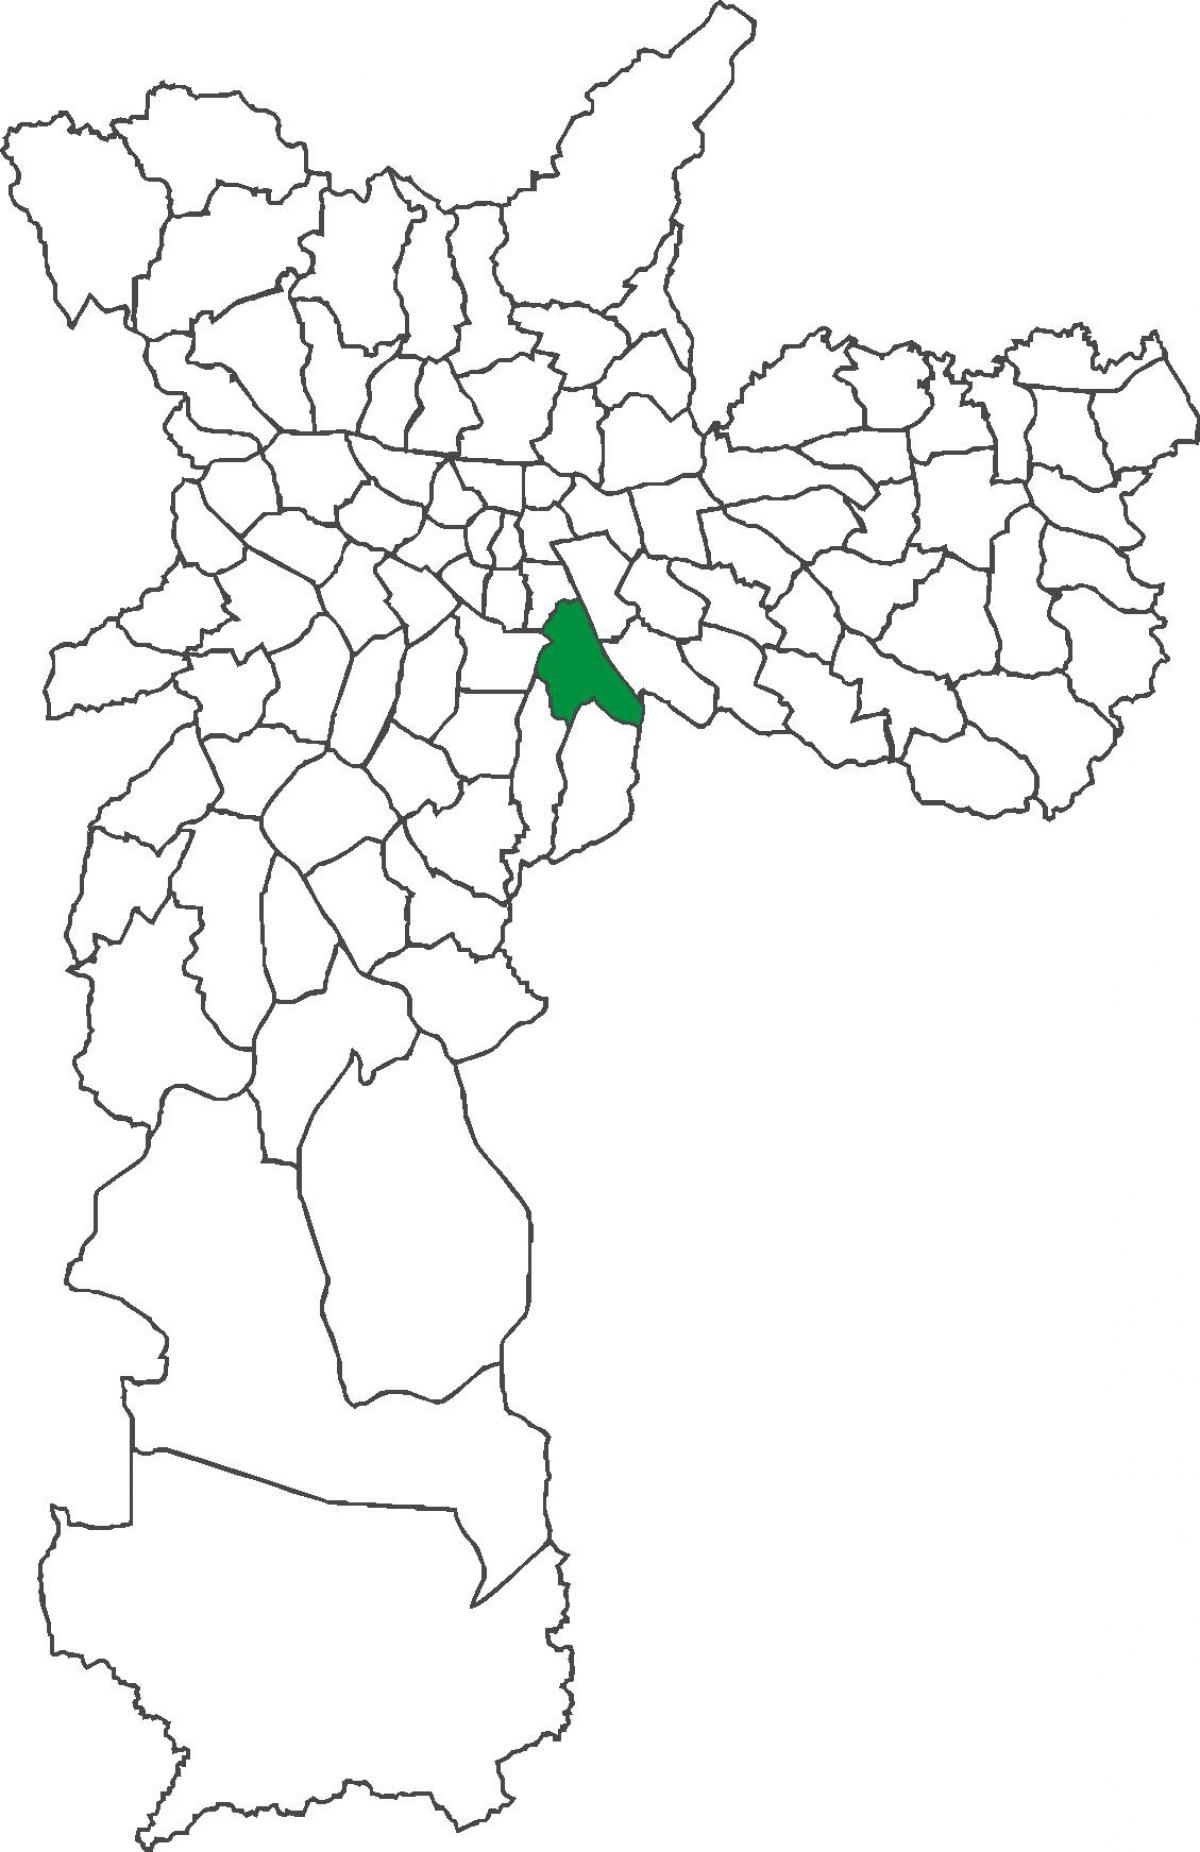 નકશો Ipiranga જિલ્લા